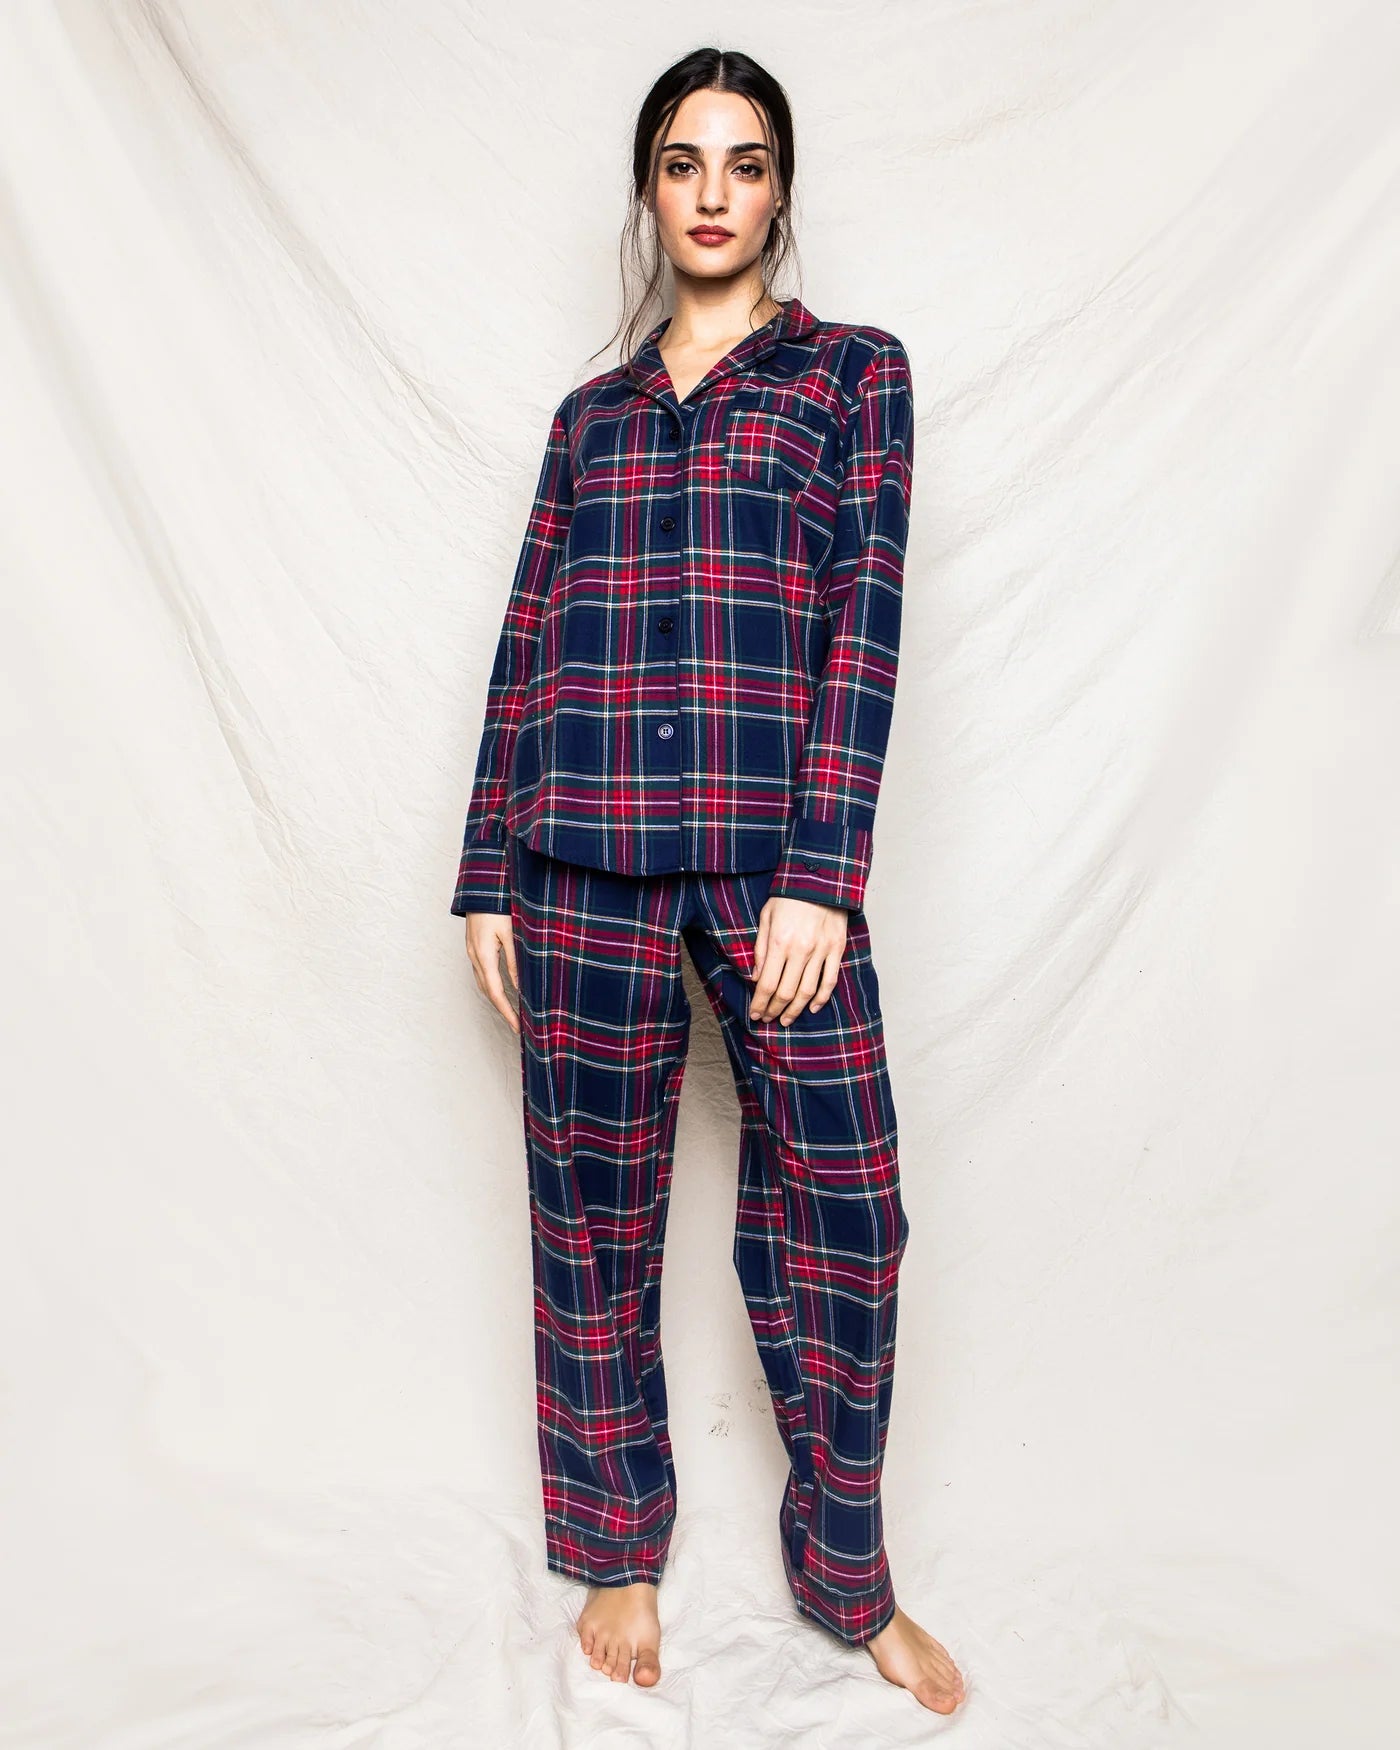 Windsor Tartan Pajama Set- Woman's